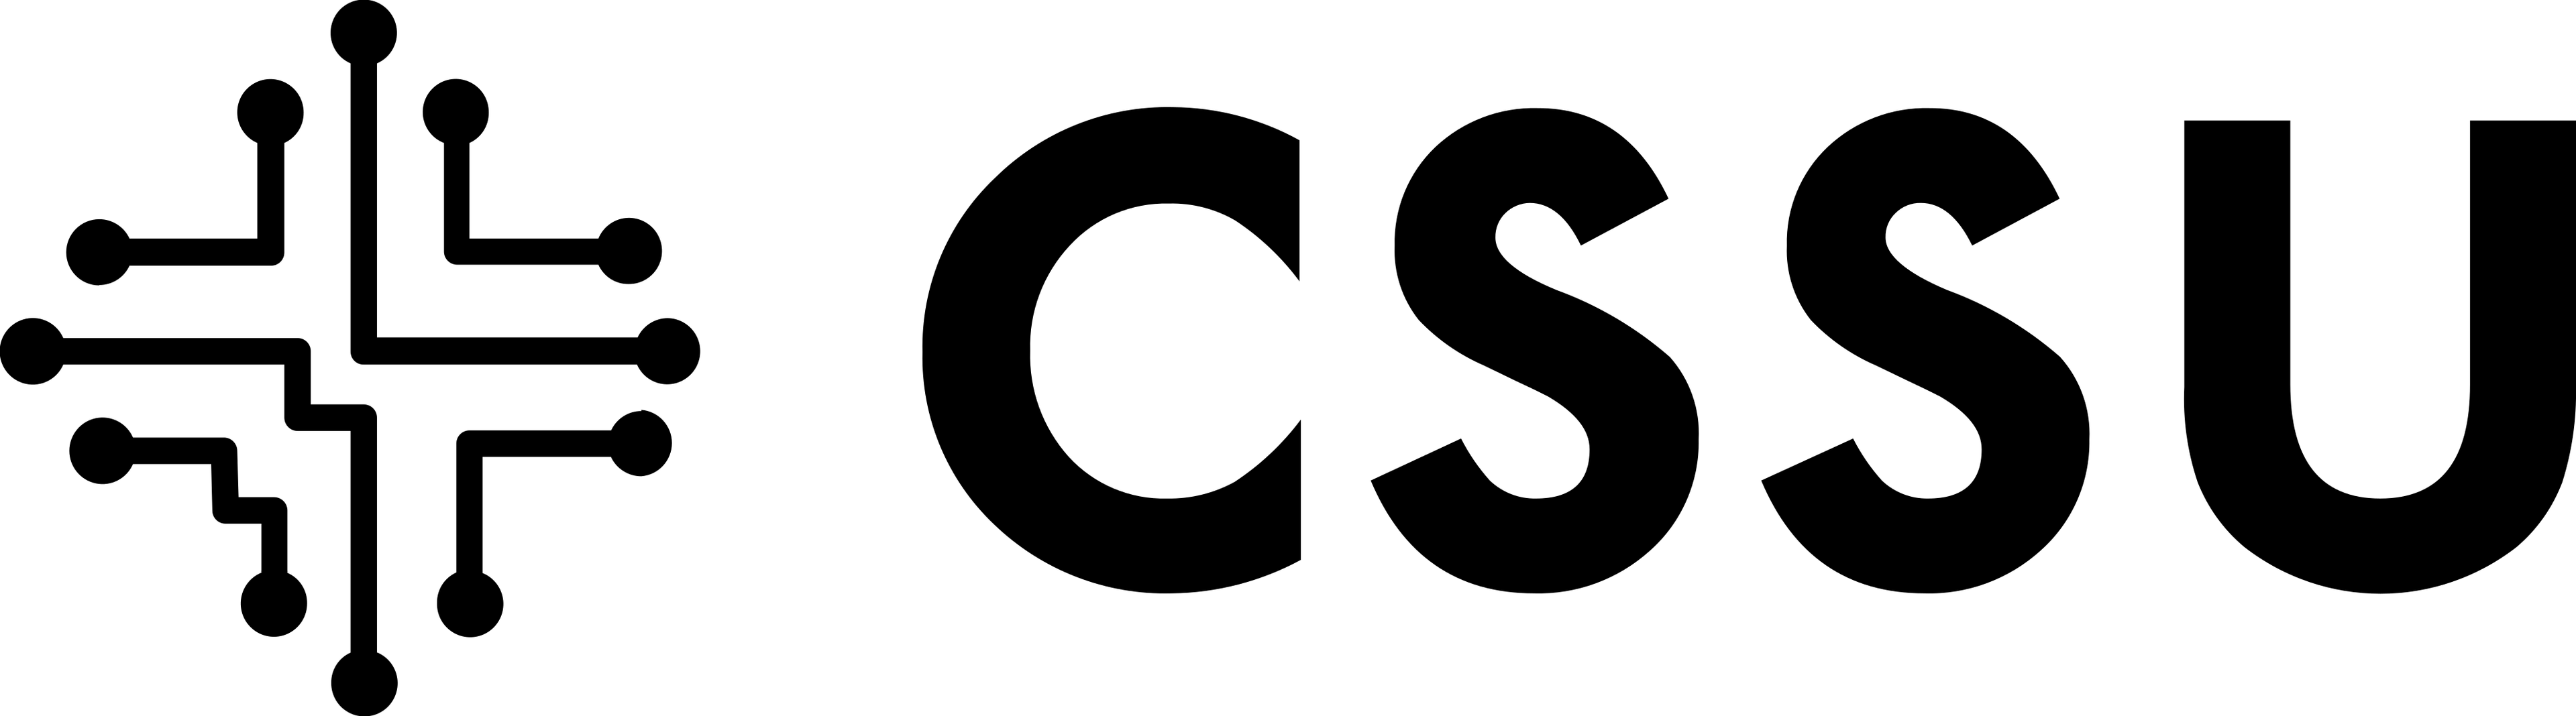 CSSU placeholder logo